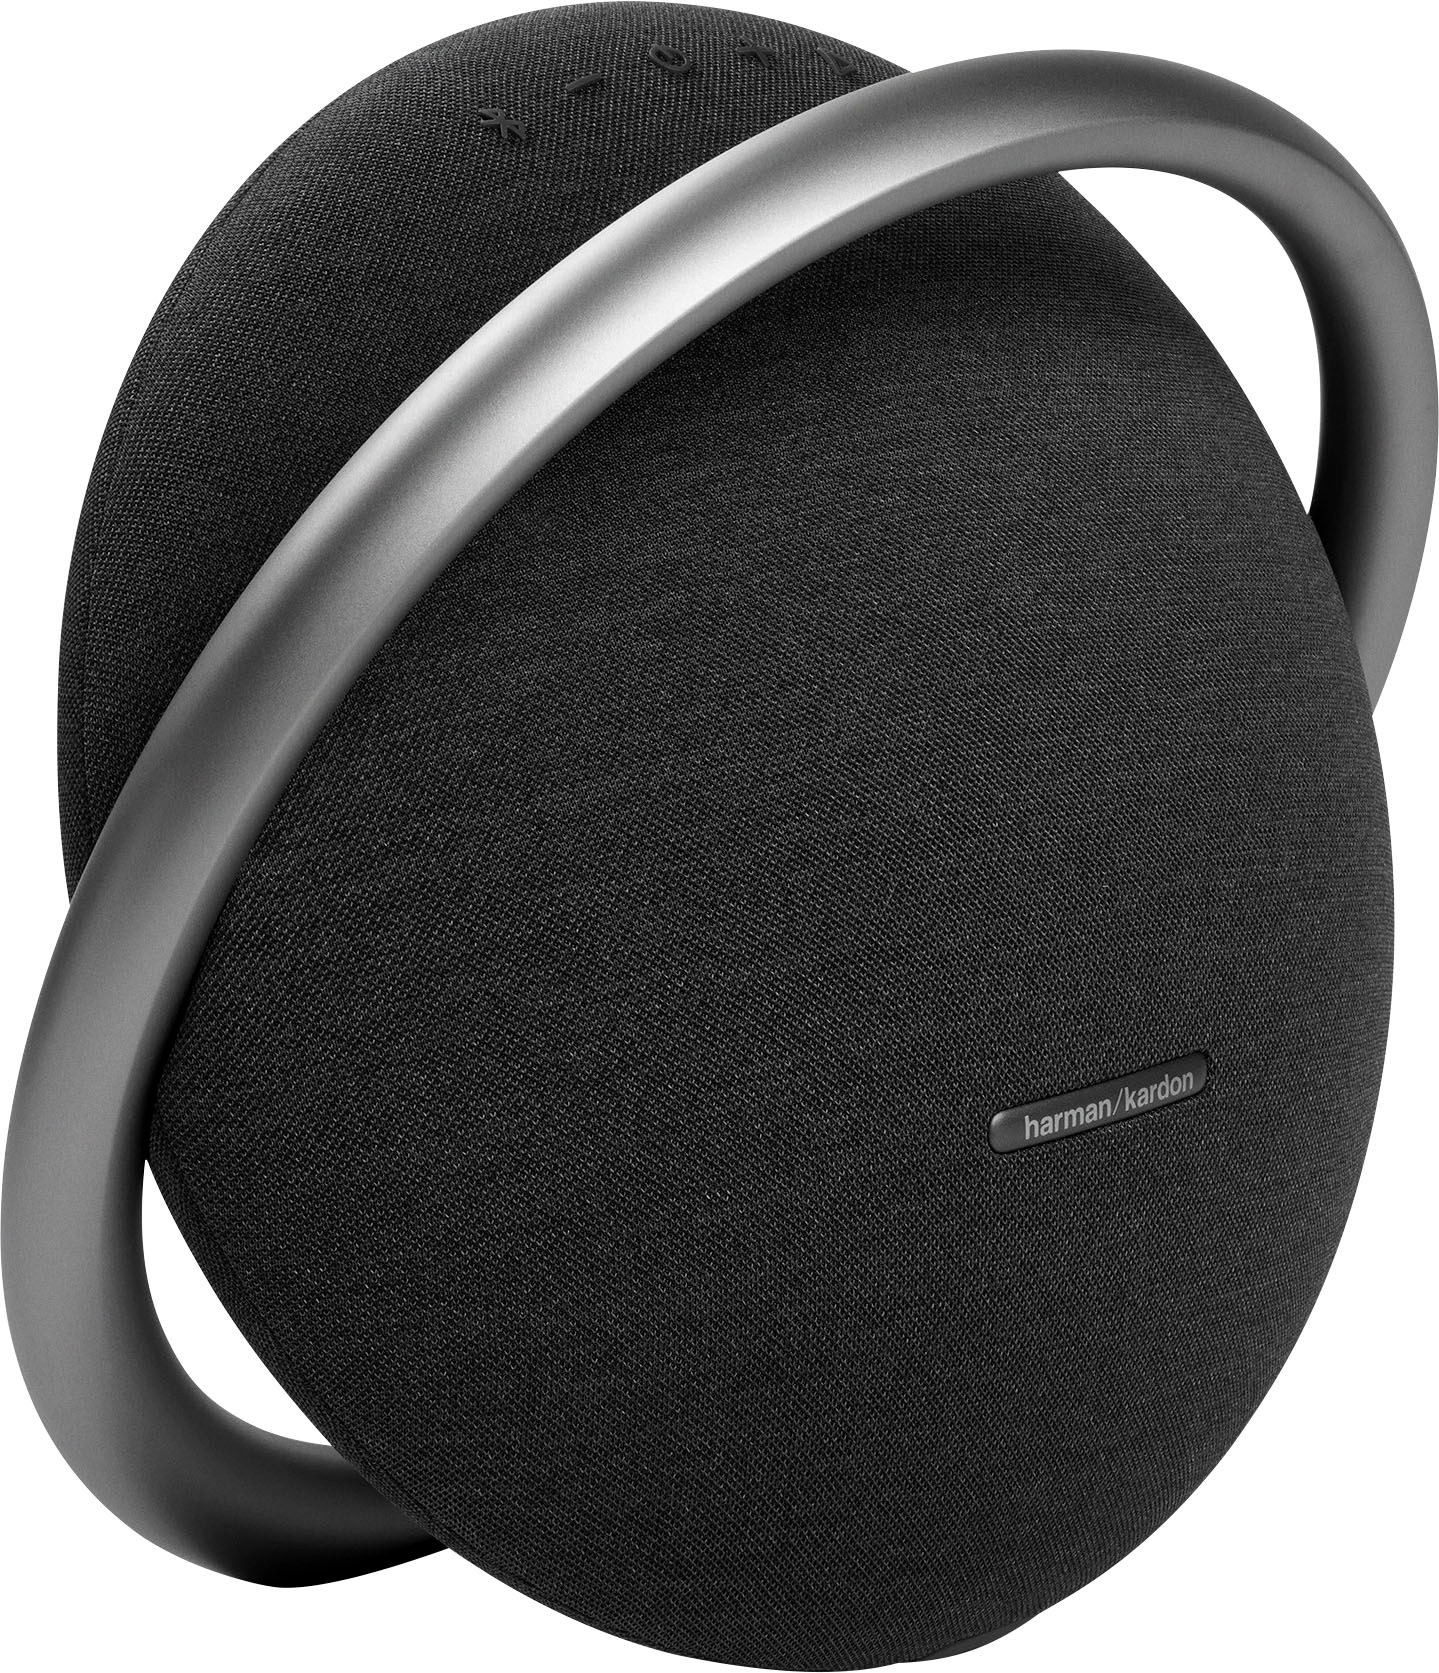 Onyx JBL HKOS7BLKAM Bluetooth Portable Buy Black - 7 Best Stereo Speaker Studio